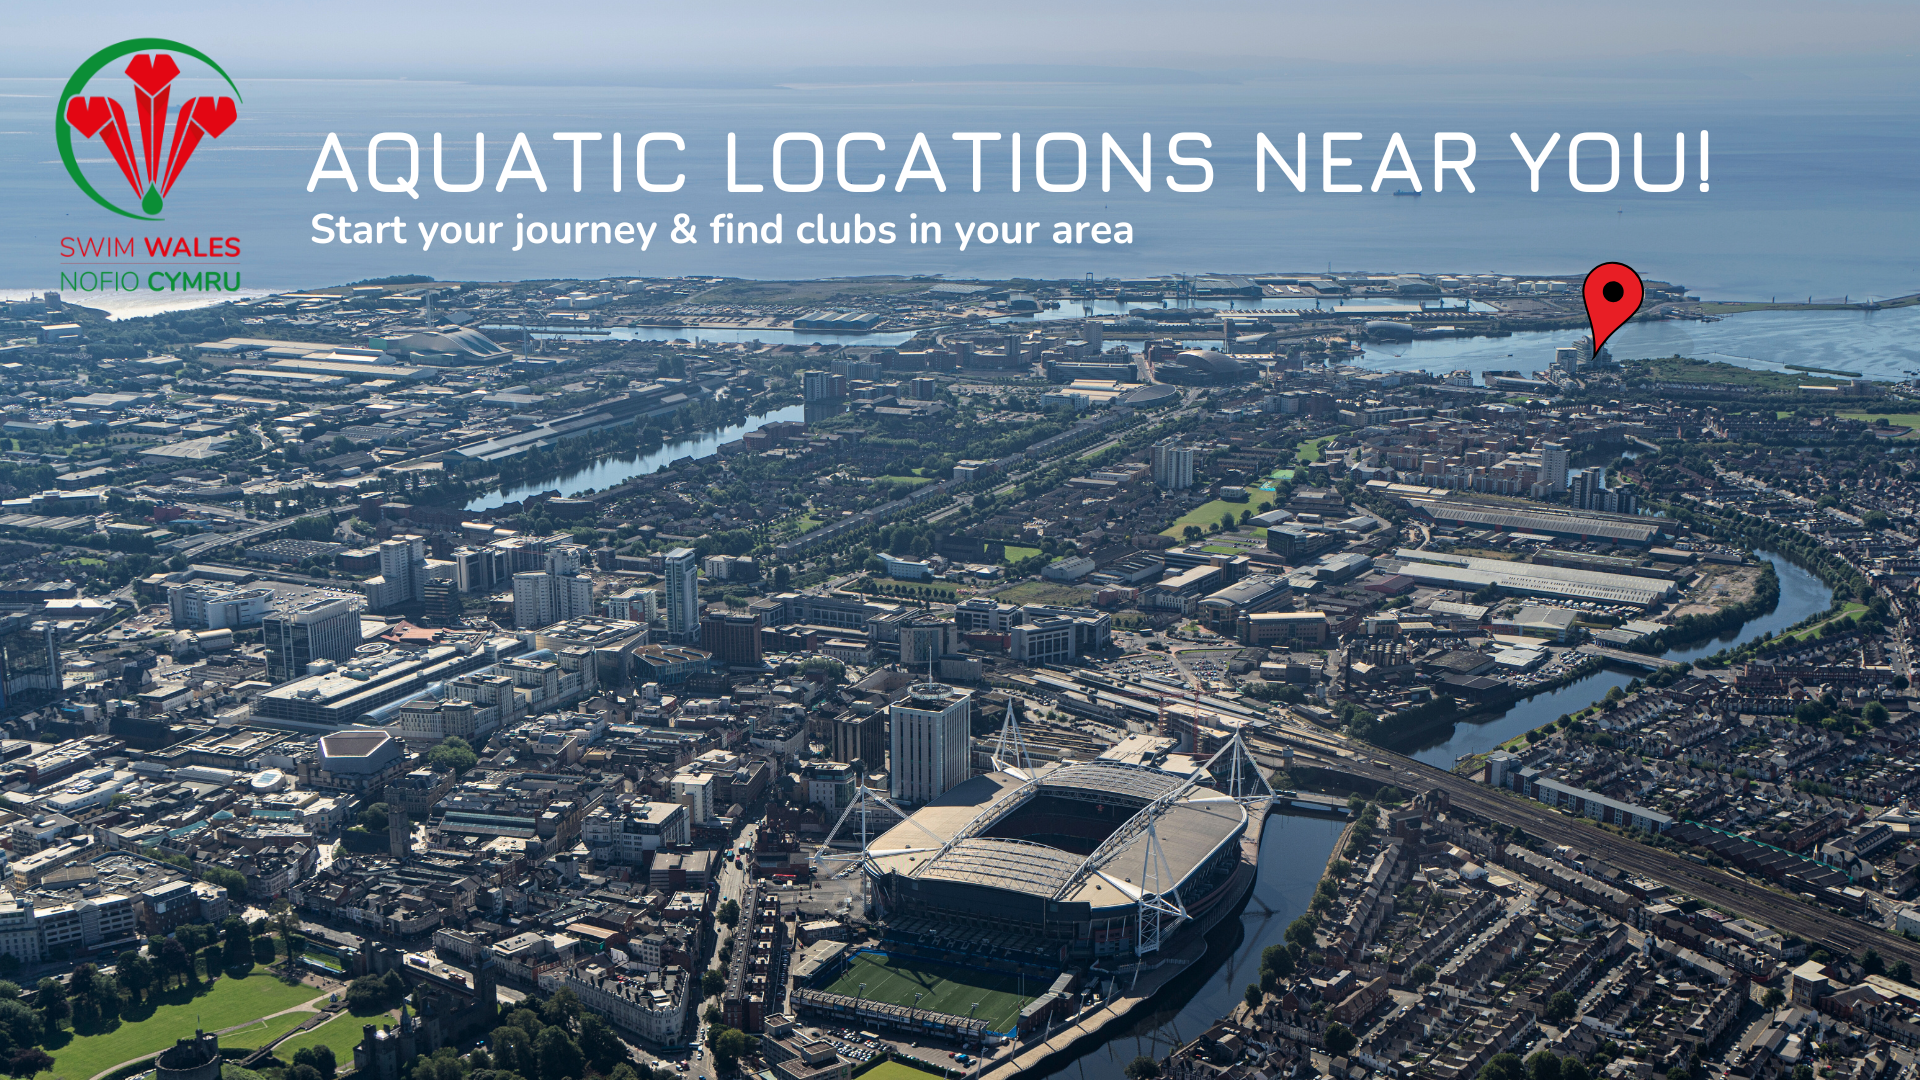 Aquatic locations